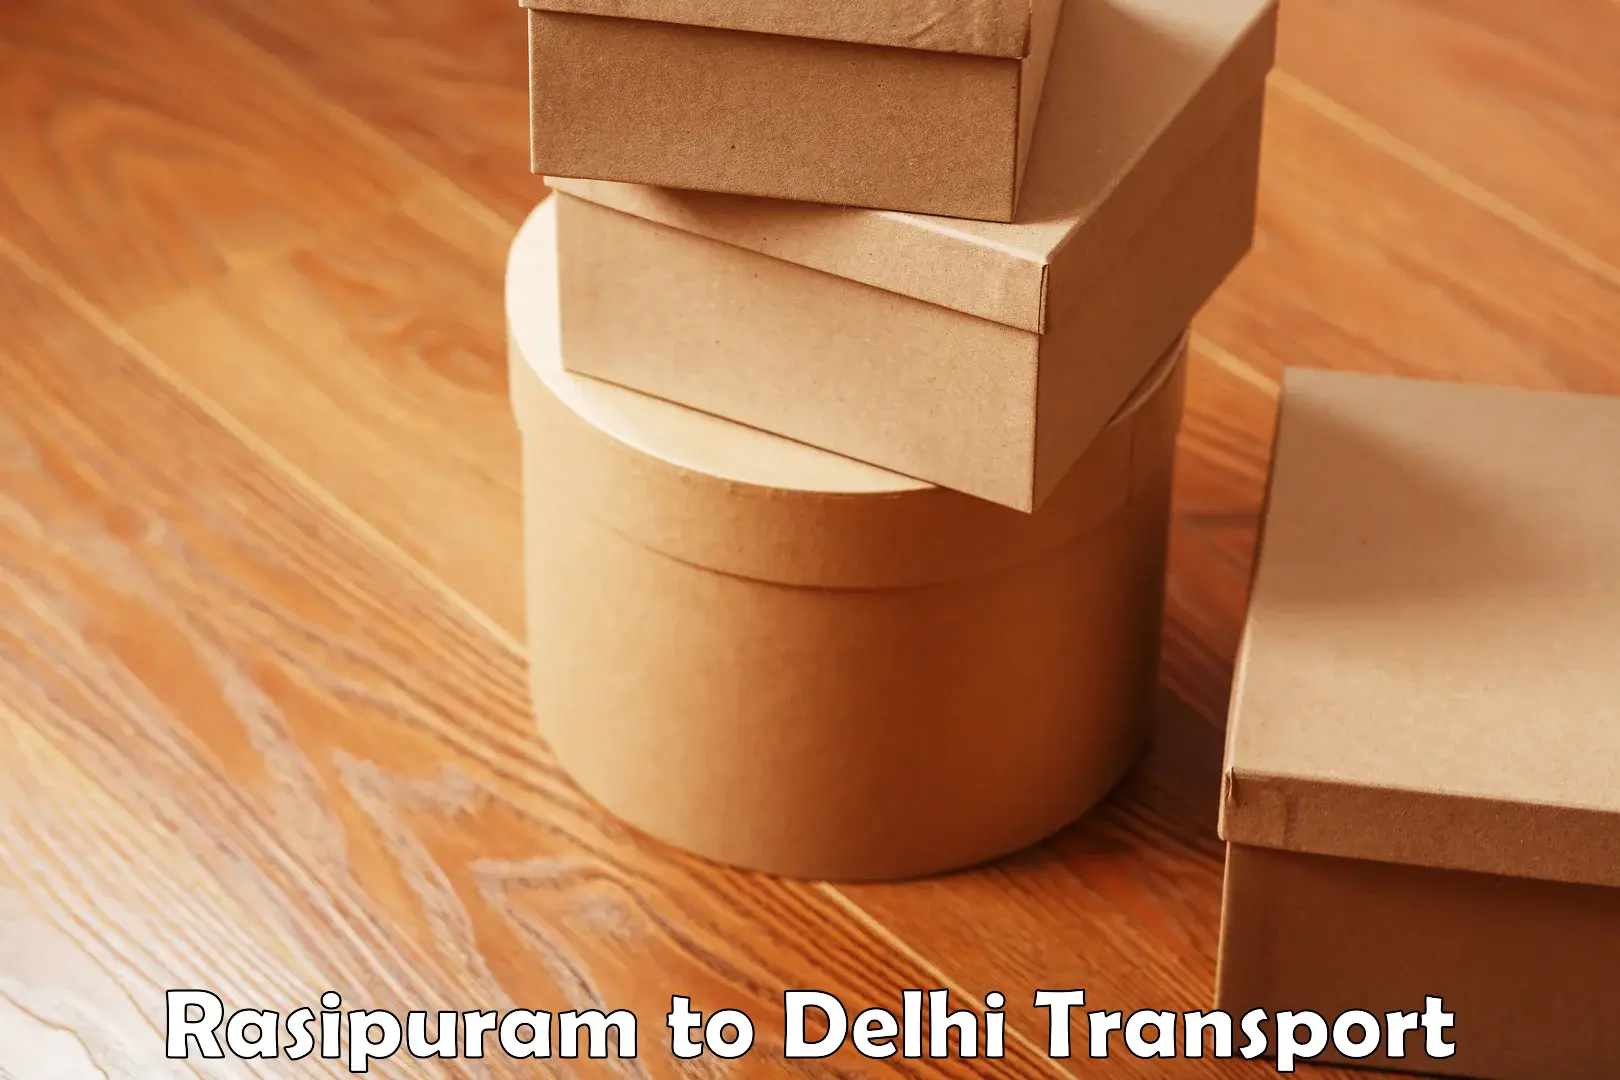 Commercial transport service Rasipuram to IIT Delhi